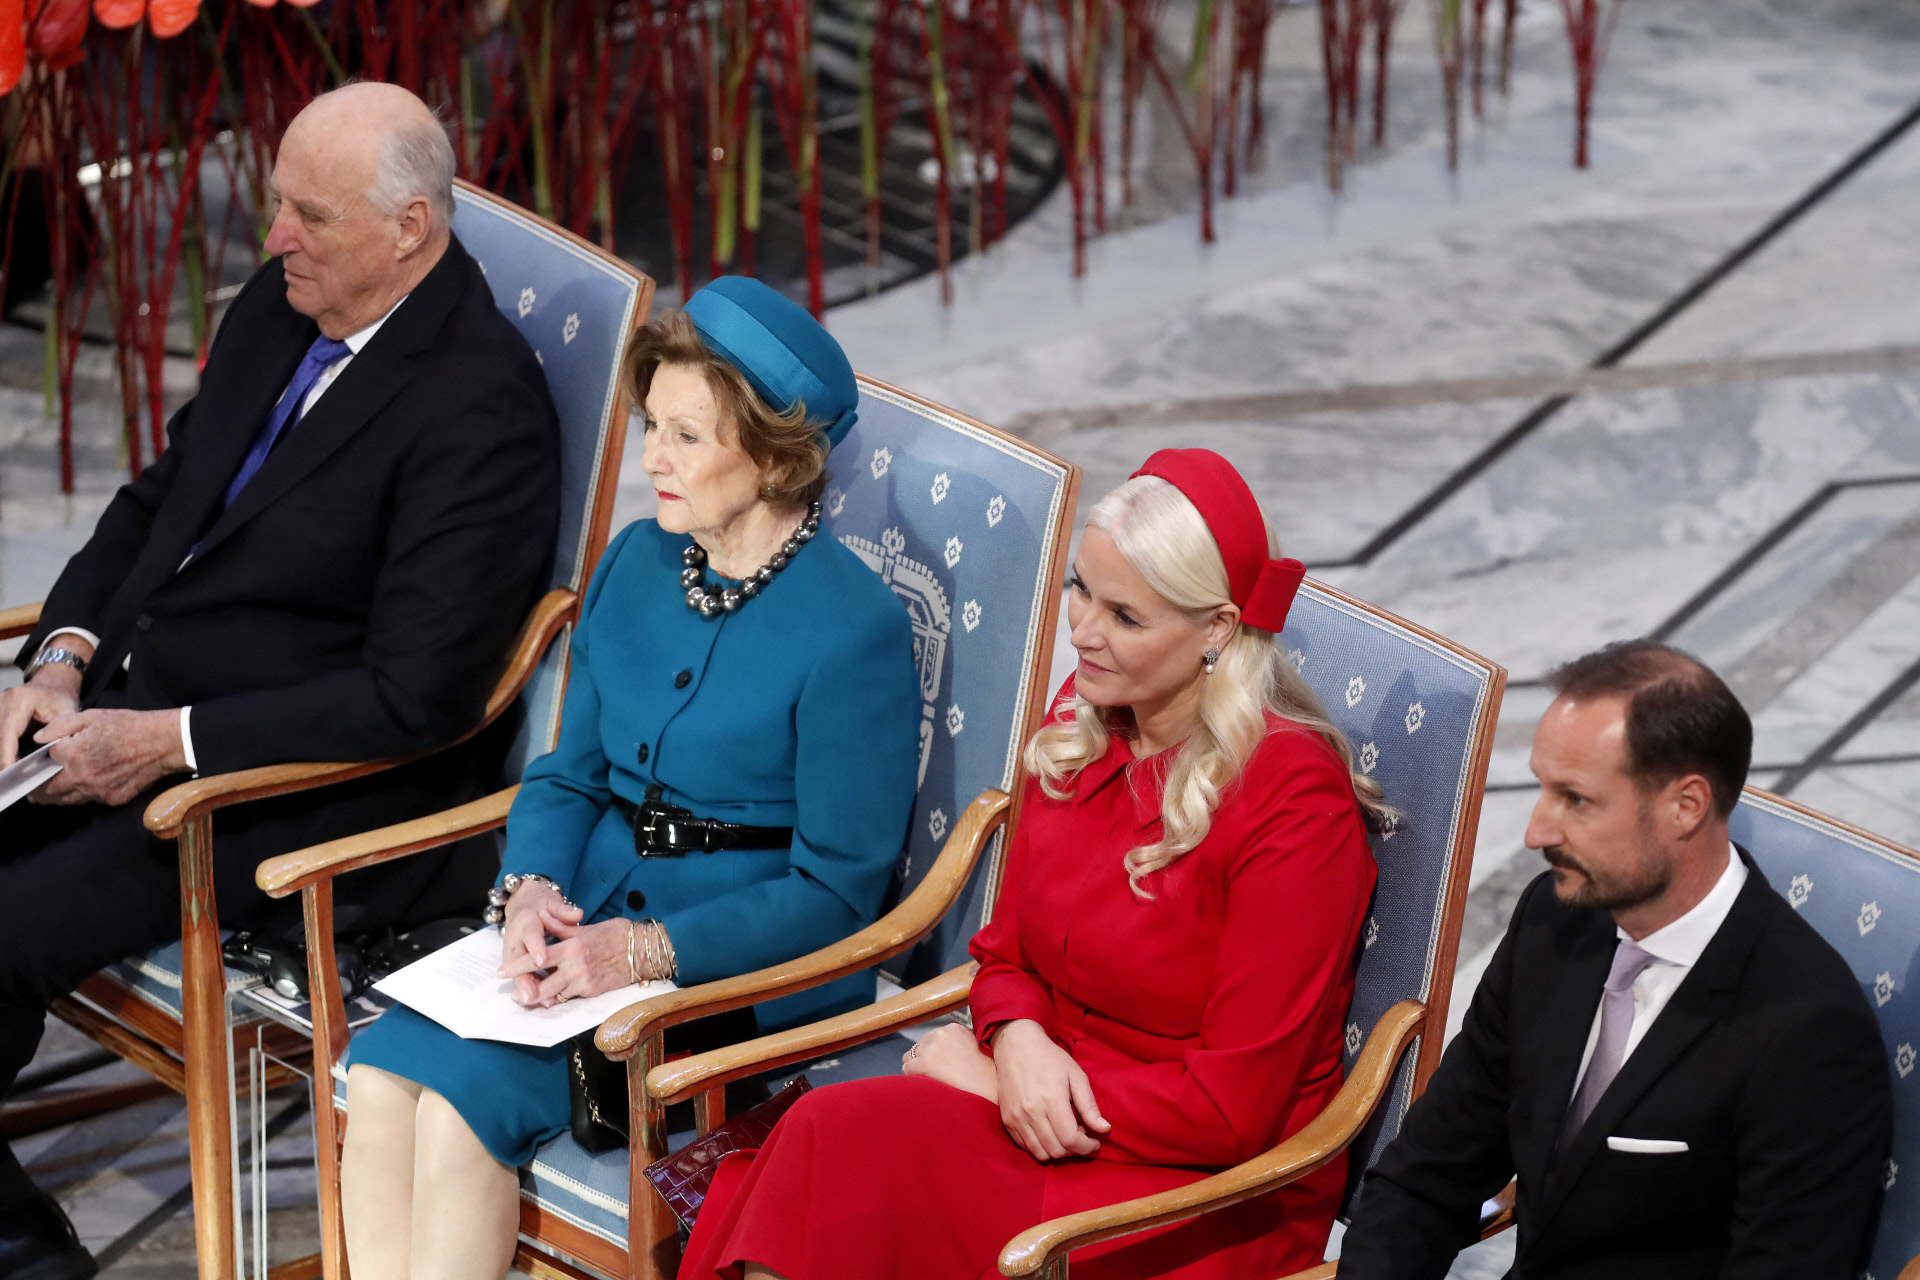 el rey harald de noruega reaparece junto al resto de su familia tras su enfermedad